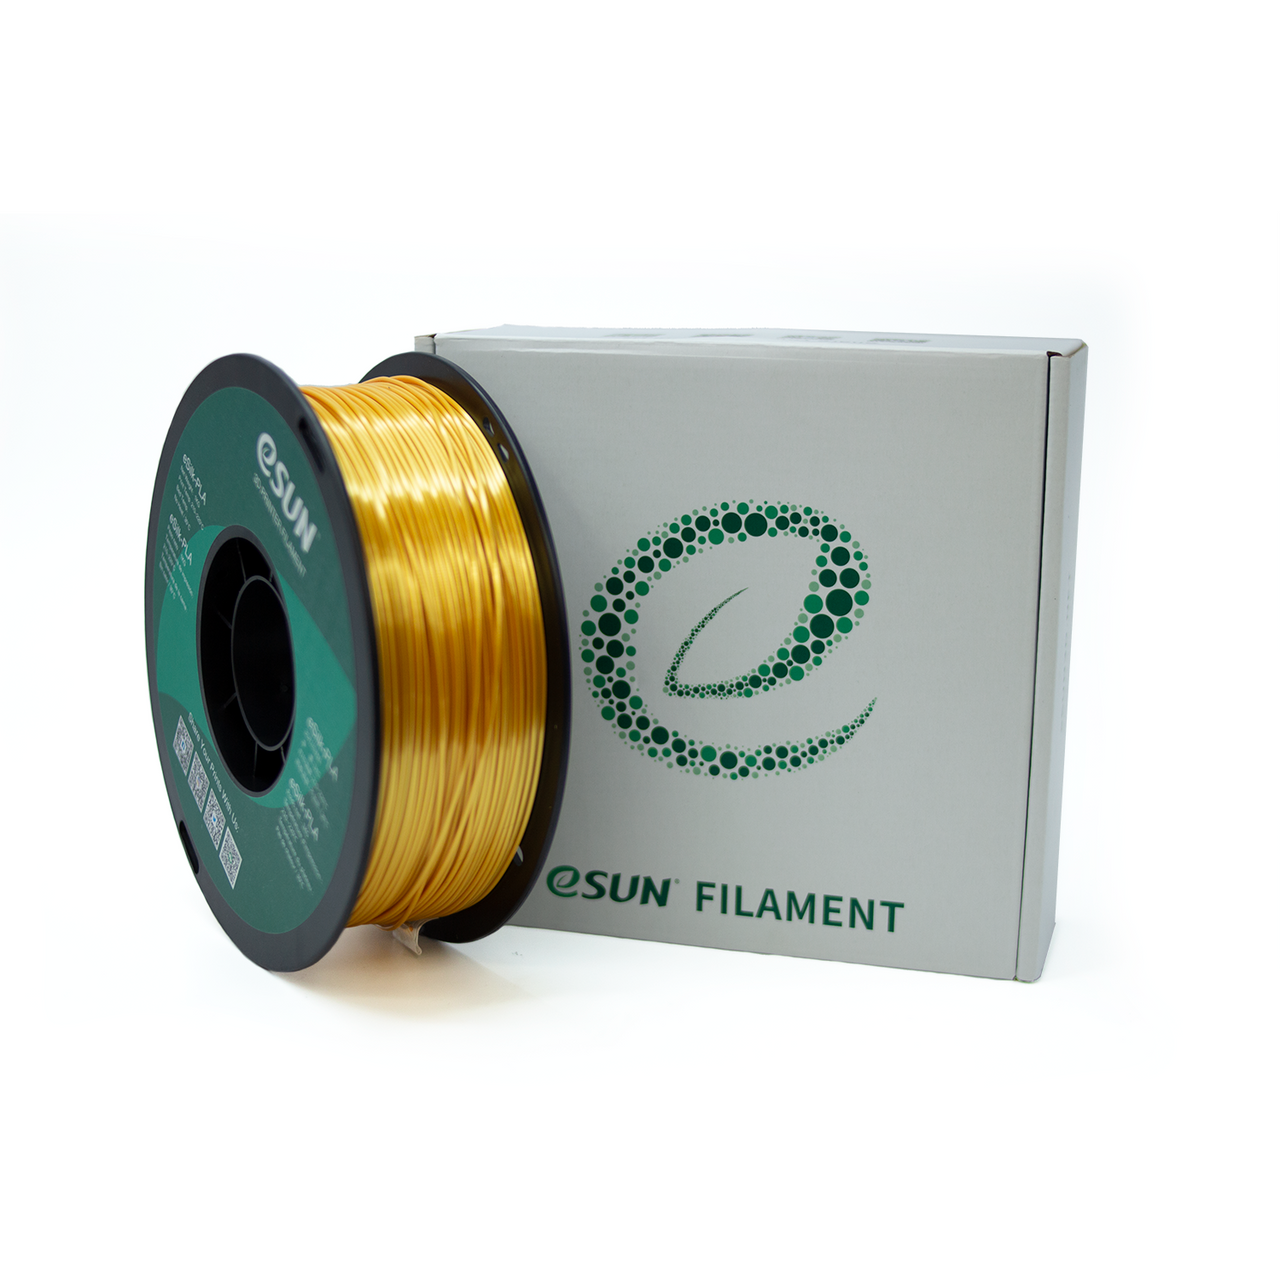 eSun Silk PLA 1.75mm 1kg Roll - Gold, filament- Lumin's Workshop